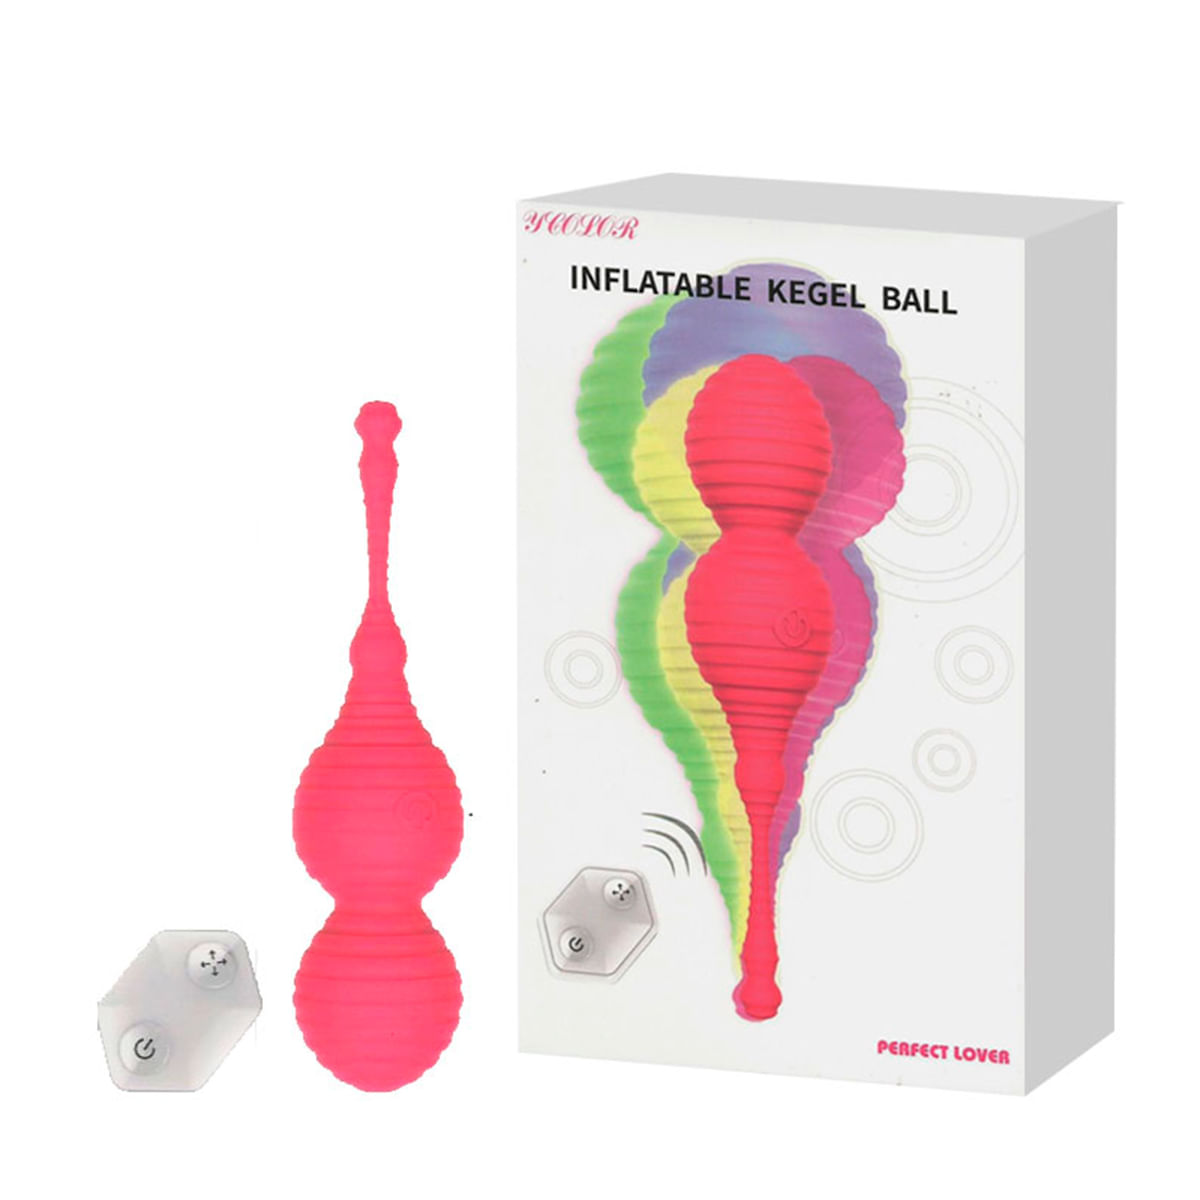 Infatable Kegel Ball Bolas de Pompoar Inflável Recarregável com 7 Modos de Vibração 3R Import